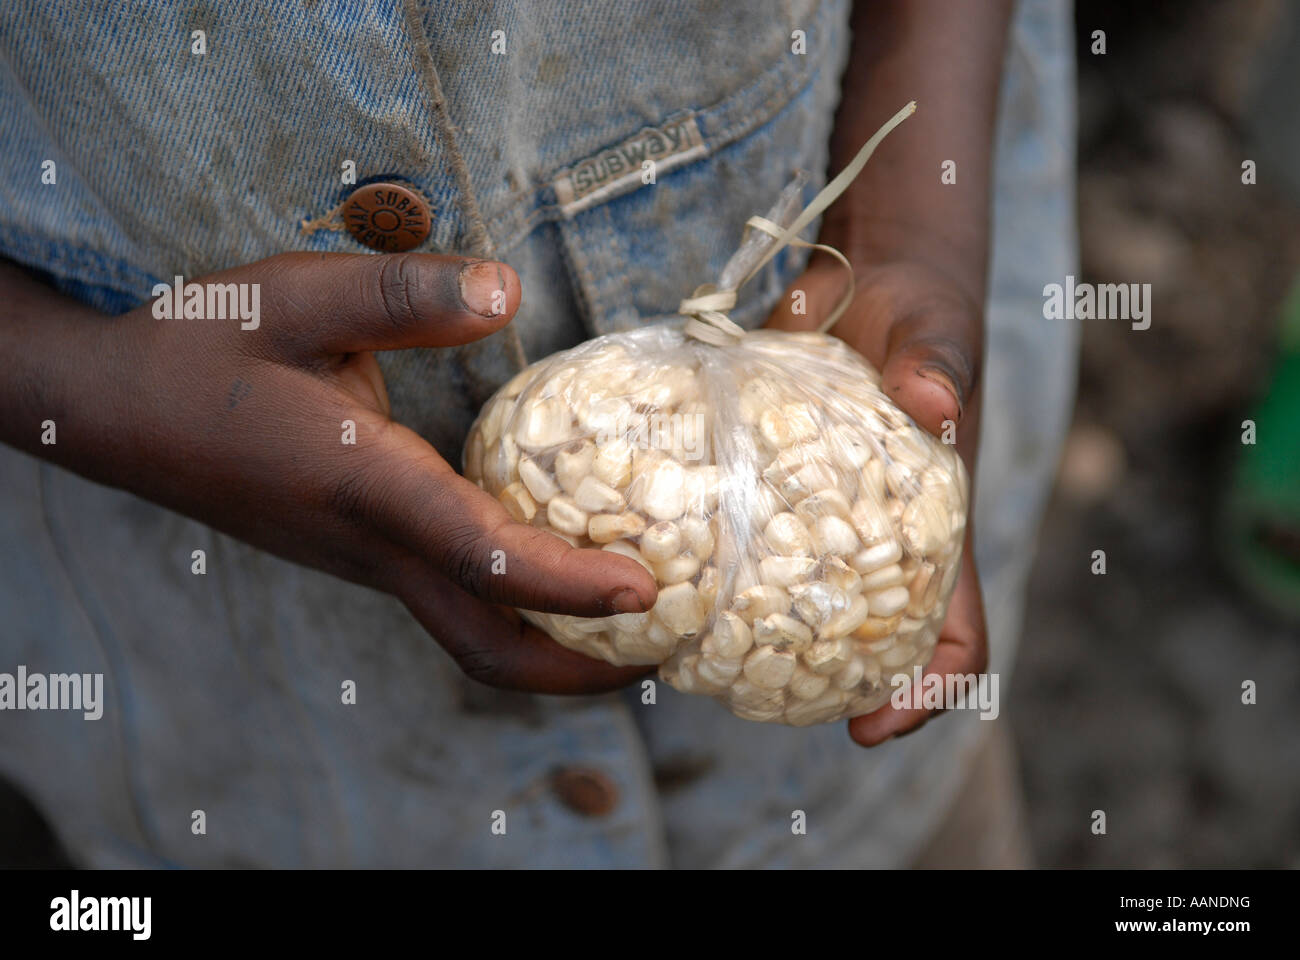 Un jeune garçon détient une liasse de céréales dans la province du Nord-Kivu, RD Congo Afrique Banque D'Images